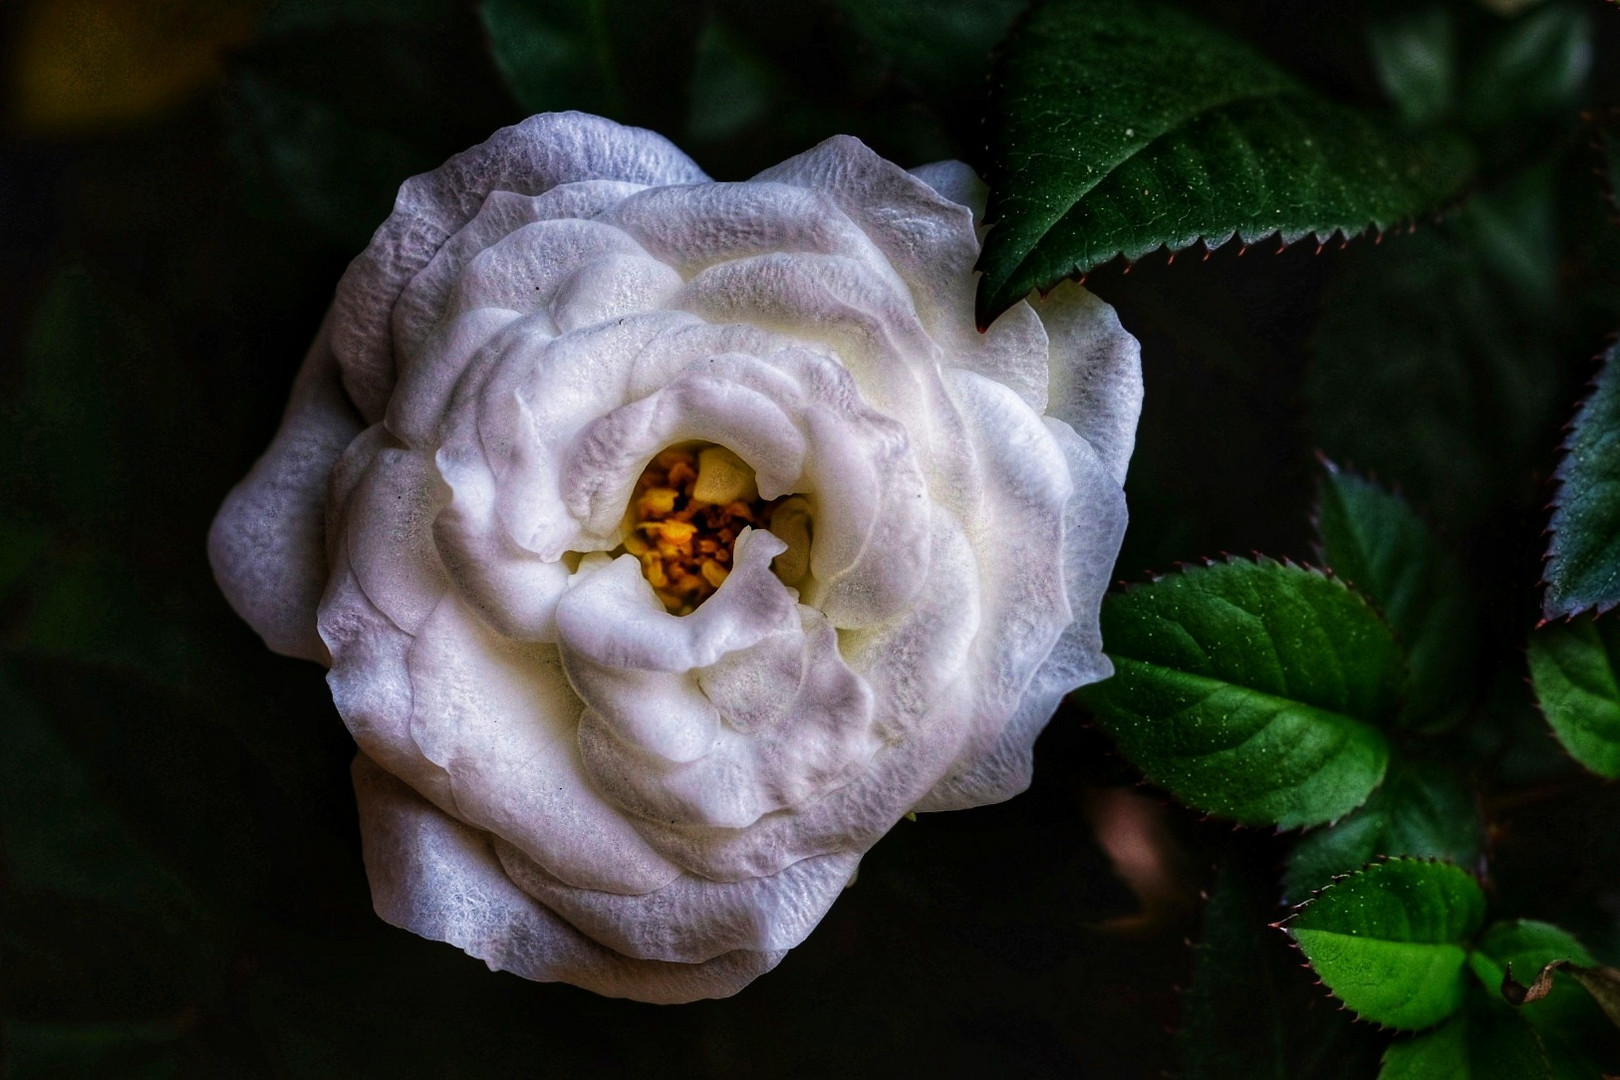 White rose 